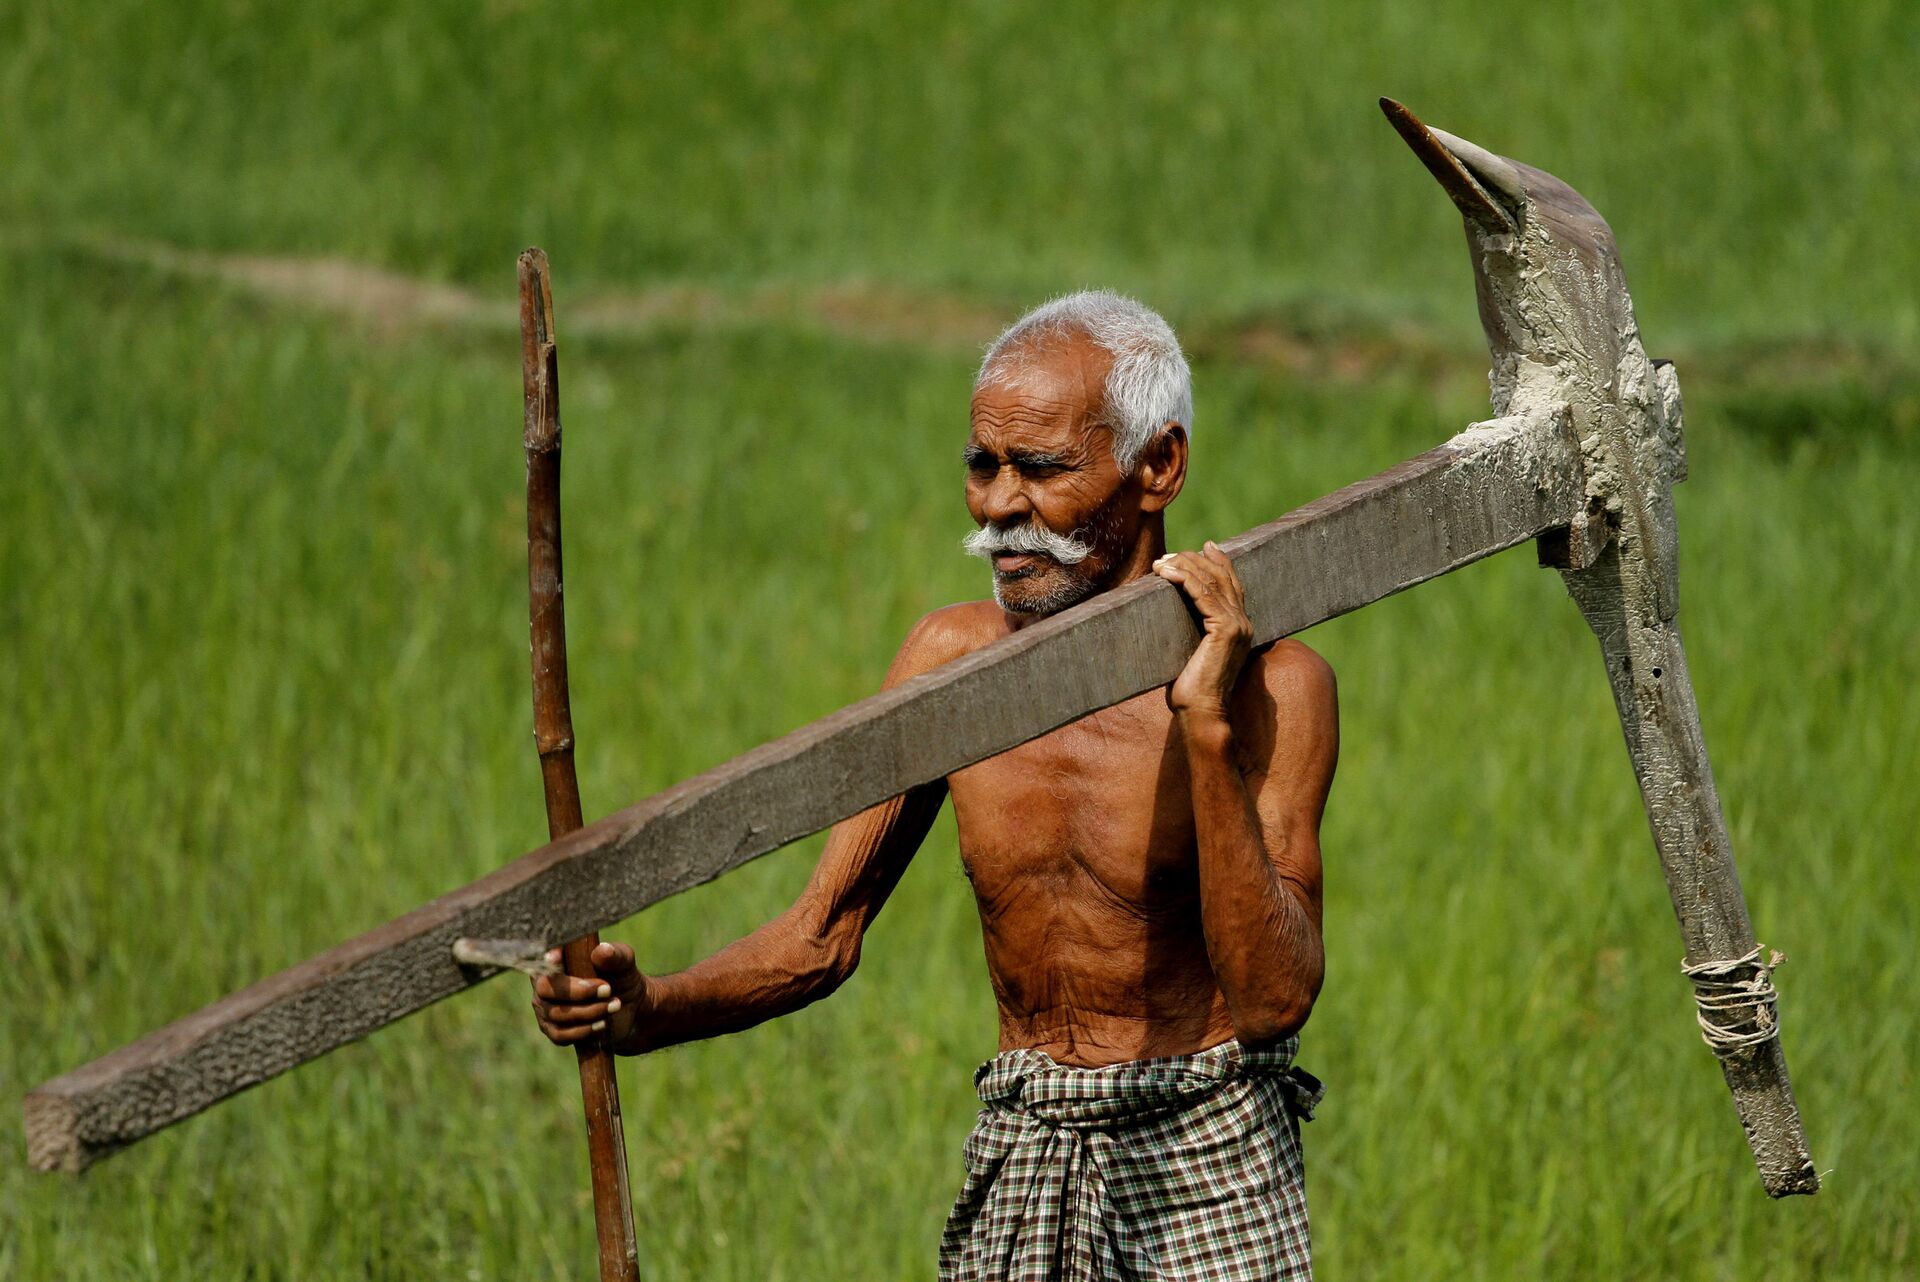 'Lutaremos até o último suspiro': por que os protestos de fazendeiros na Índia são tão resilientes? - Sputnik Brasil, 1920, 04.03.2021